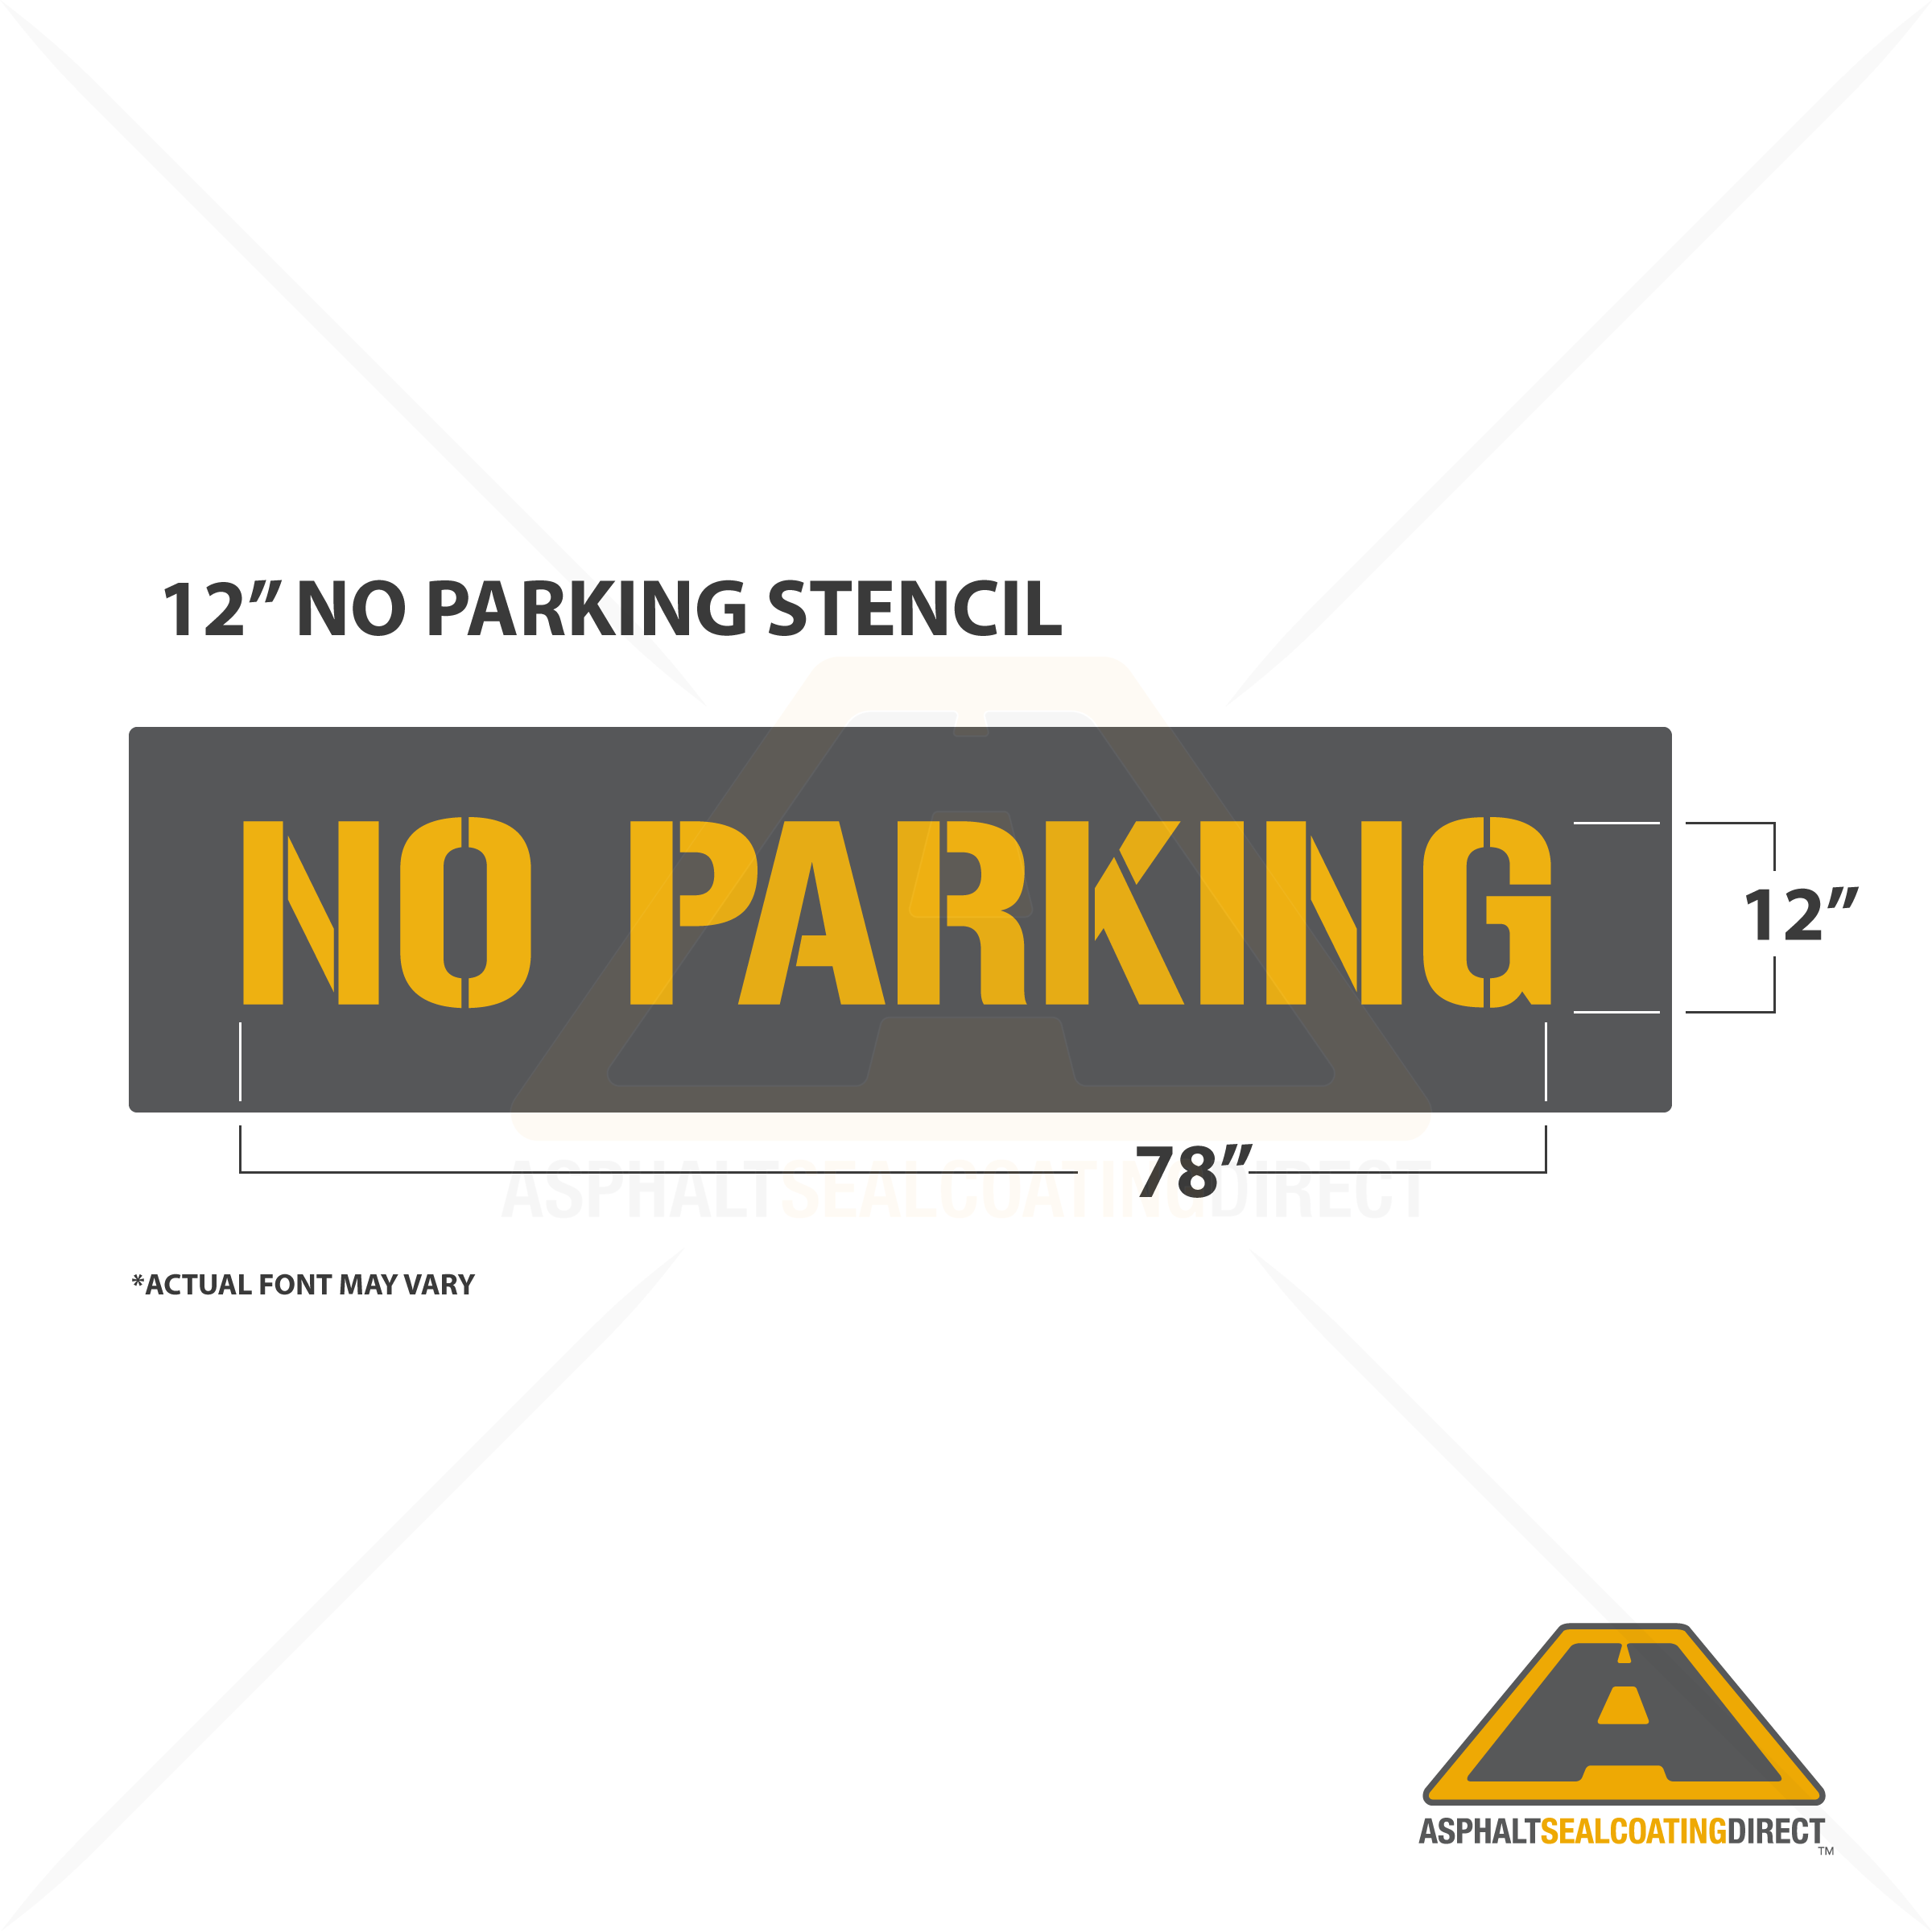 NO PARKING Parking Lot Paint Stencils For Sale Asphalt